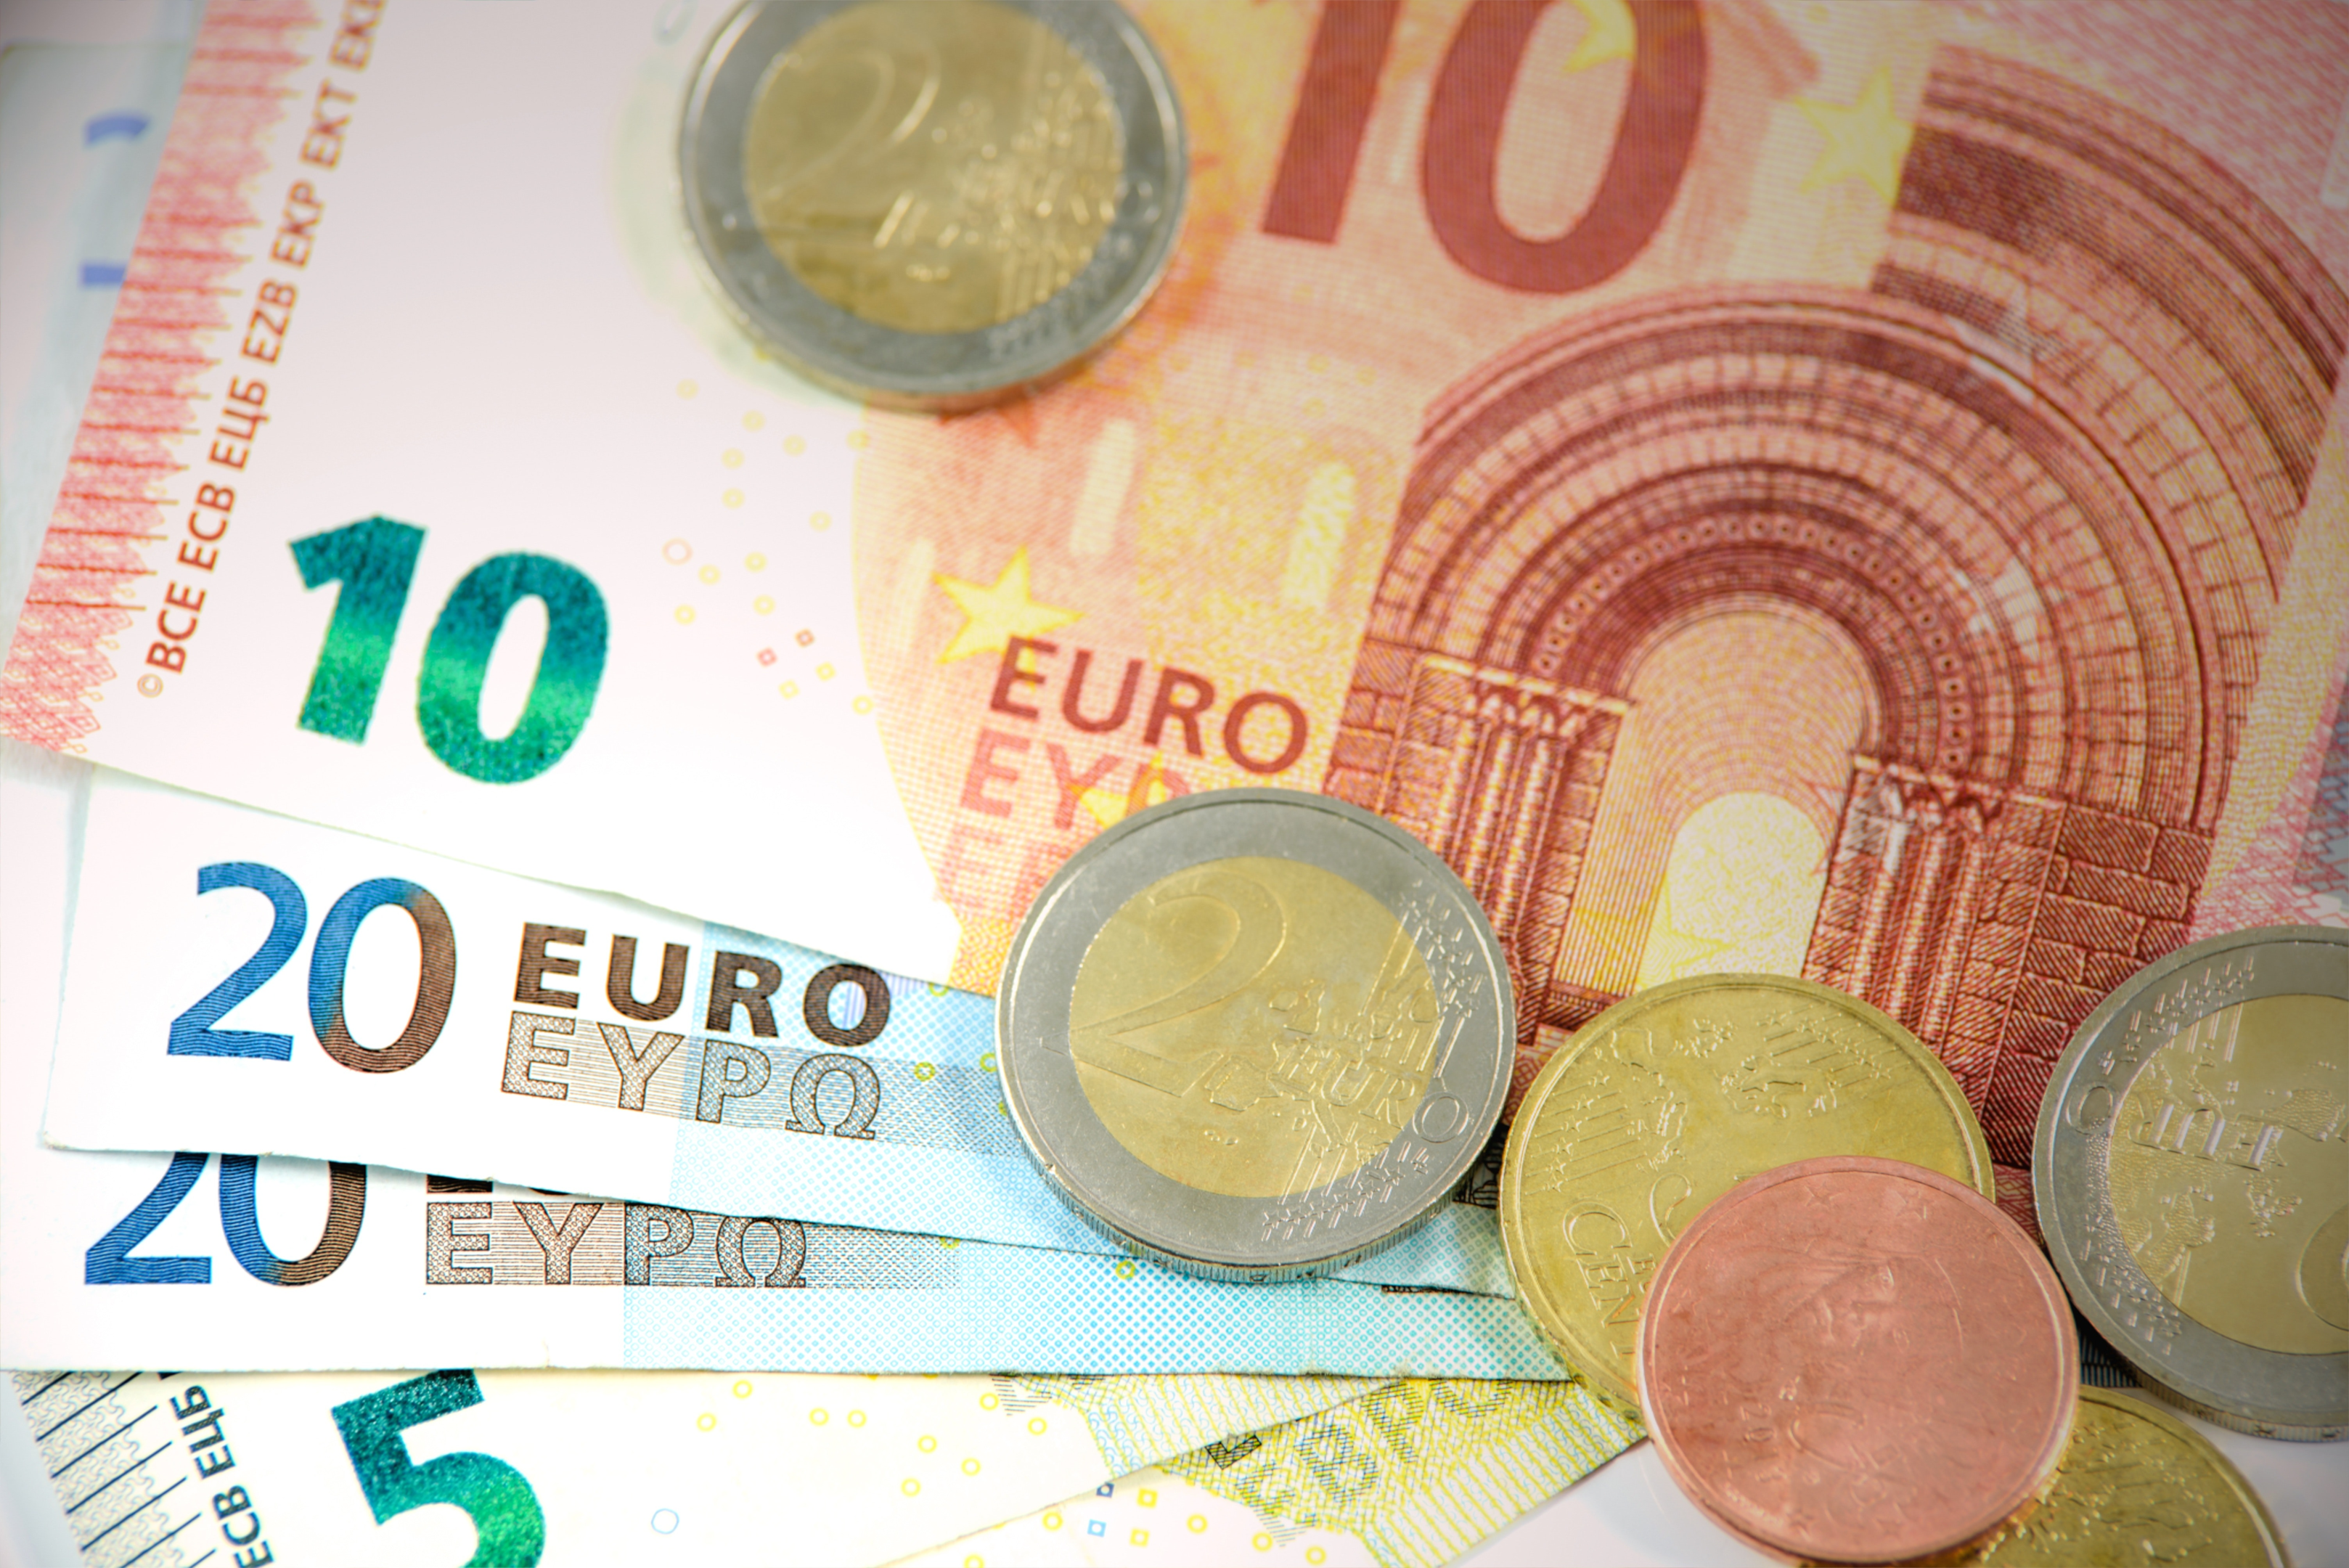 Mehrere Euro-Banknoten und -Münzen auf einem hellen Hintergrund.